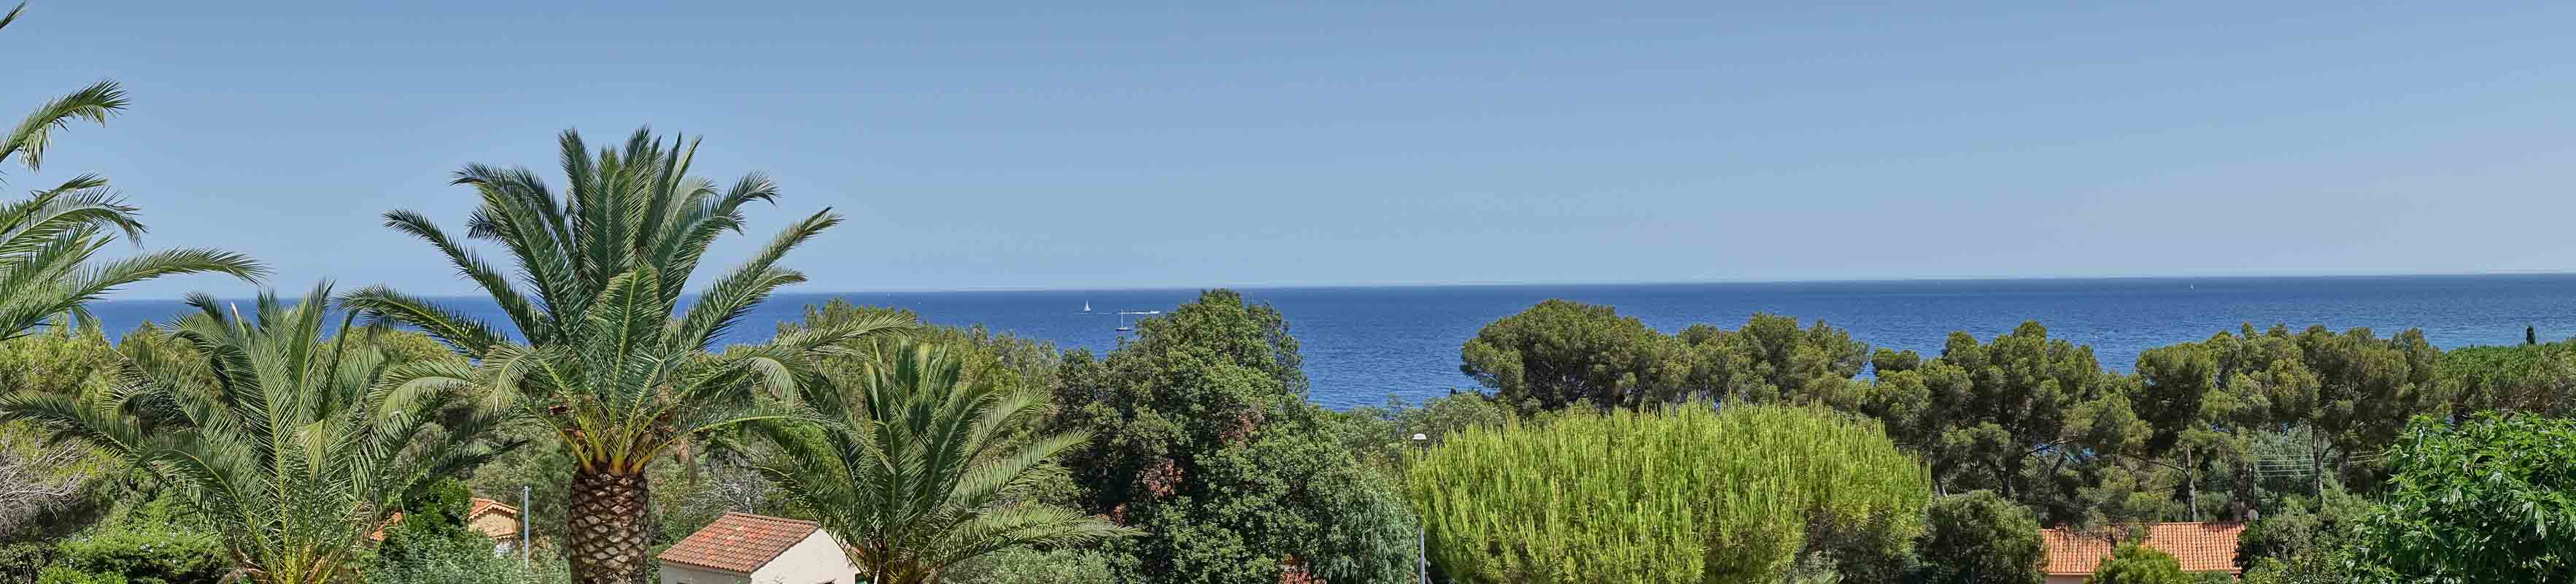 Der tolle Blick von der Terrasse der Villa Aurelia auf den Golf von Frejus an der Cote d'Azur in Südfrankreich